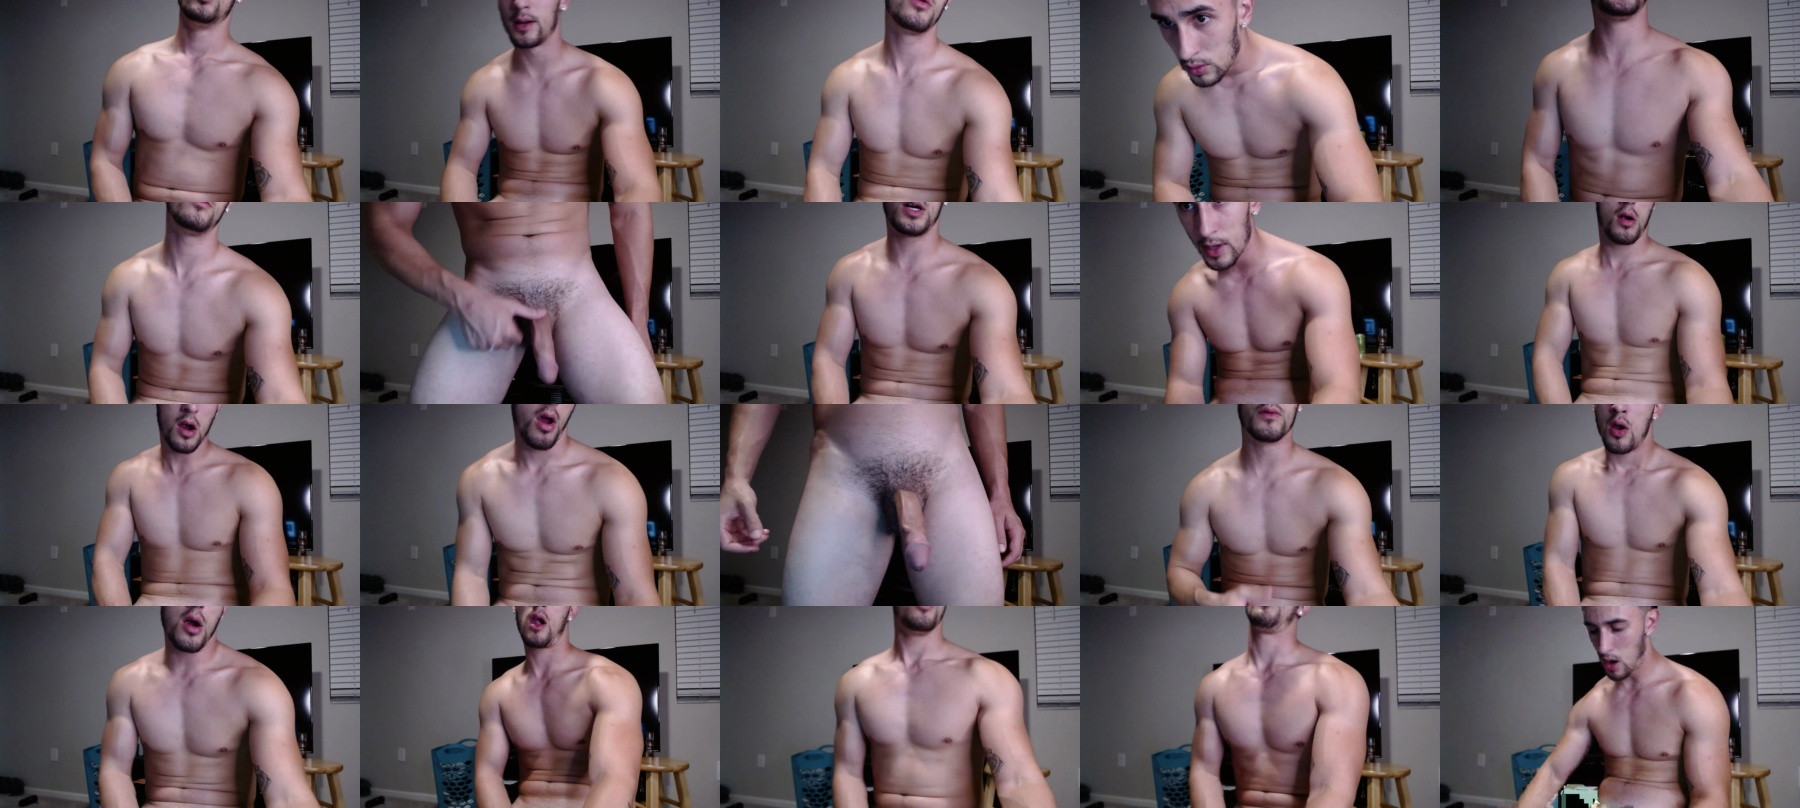 Jay_Slayz  14-03-2021 Male Naked